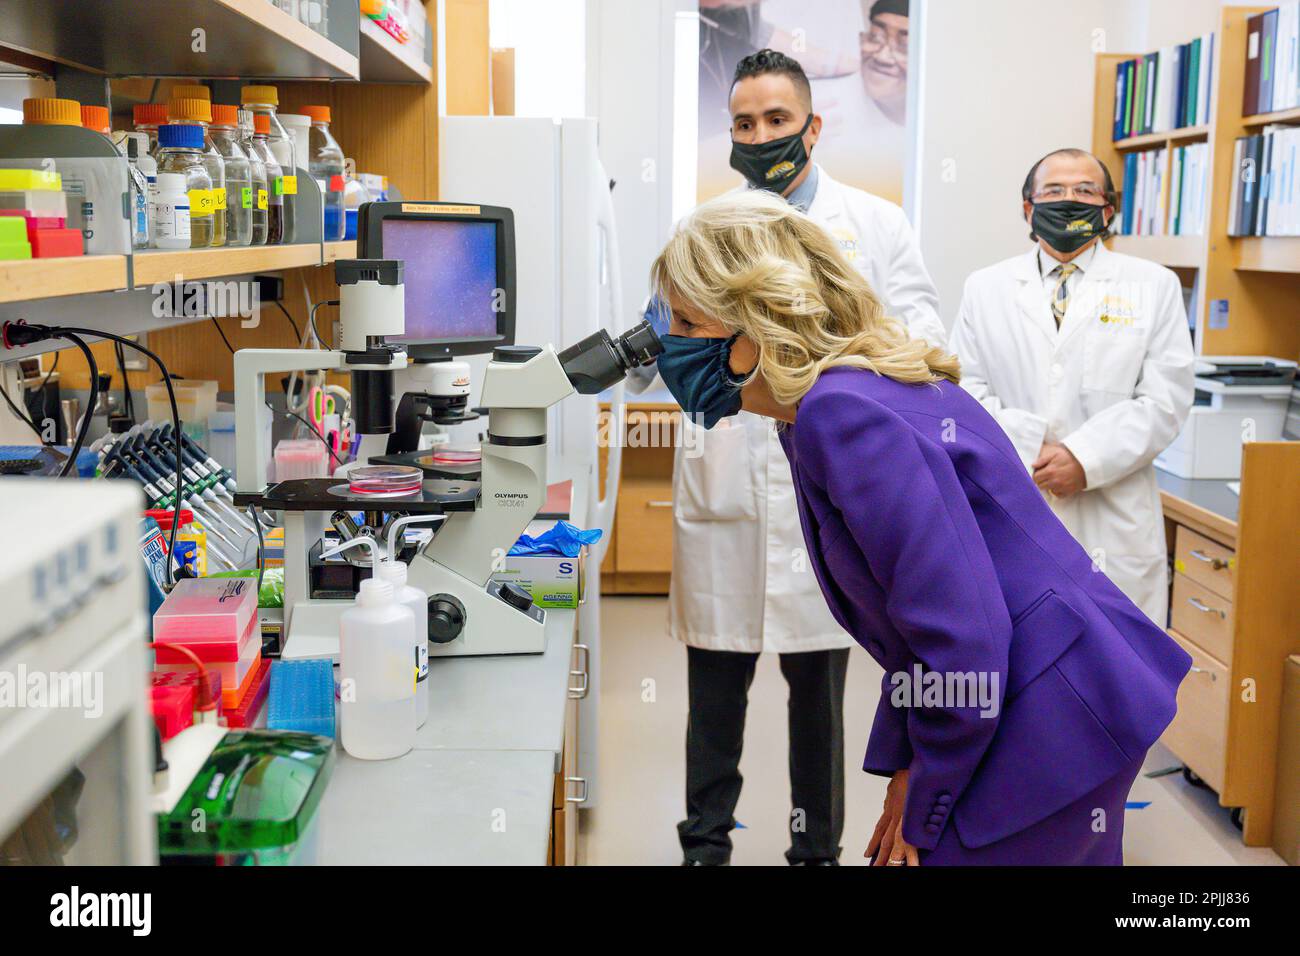 First Lady Jill Biden schaut durch ein Mikroskop Mittwoch, 24. Februar 2021, während ihrer Tour durch das McGlothlin Medical Education Center an der Virginia Commonwealth University in Richmond, Virginia. (Mit freundlicher Genehmigung von Ana Isabel Martinez Chamorro) Stockfoto